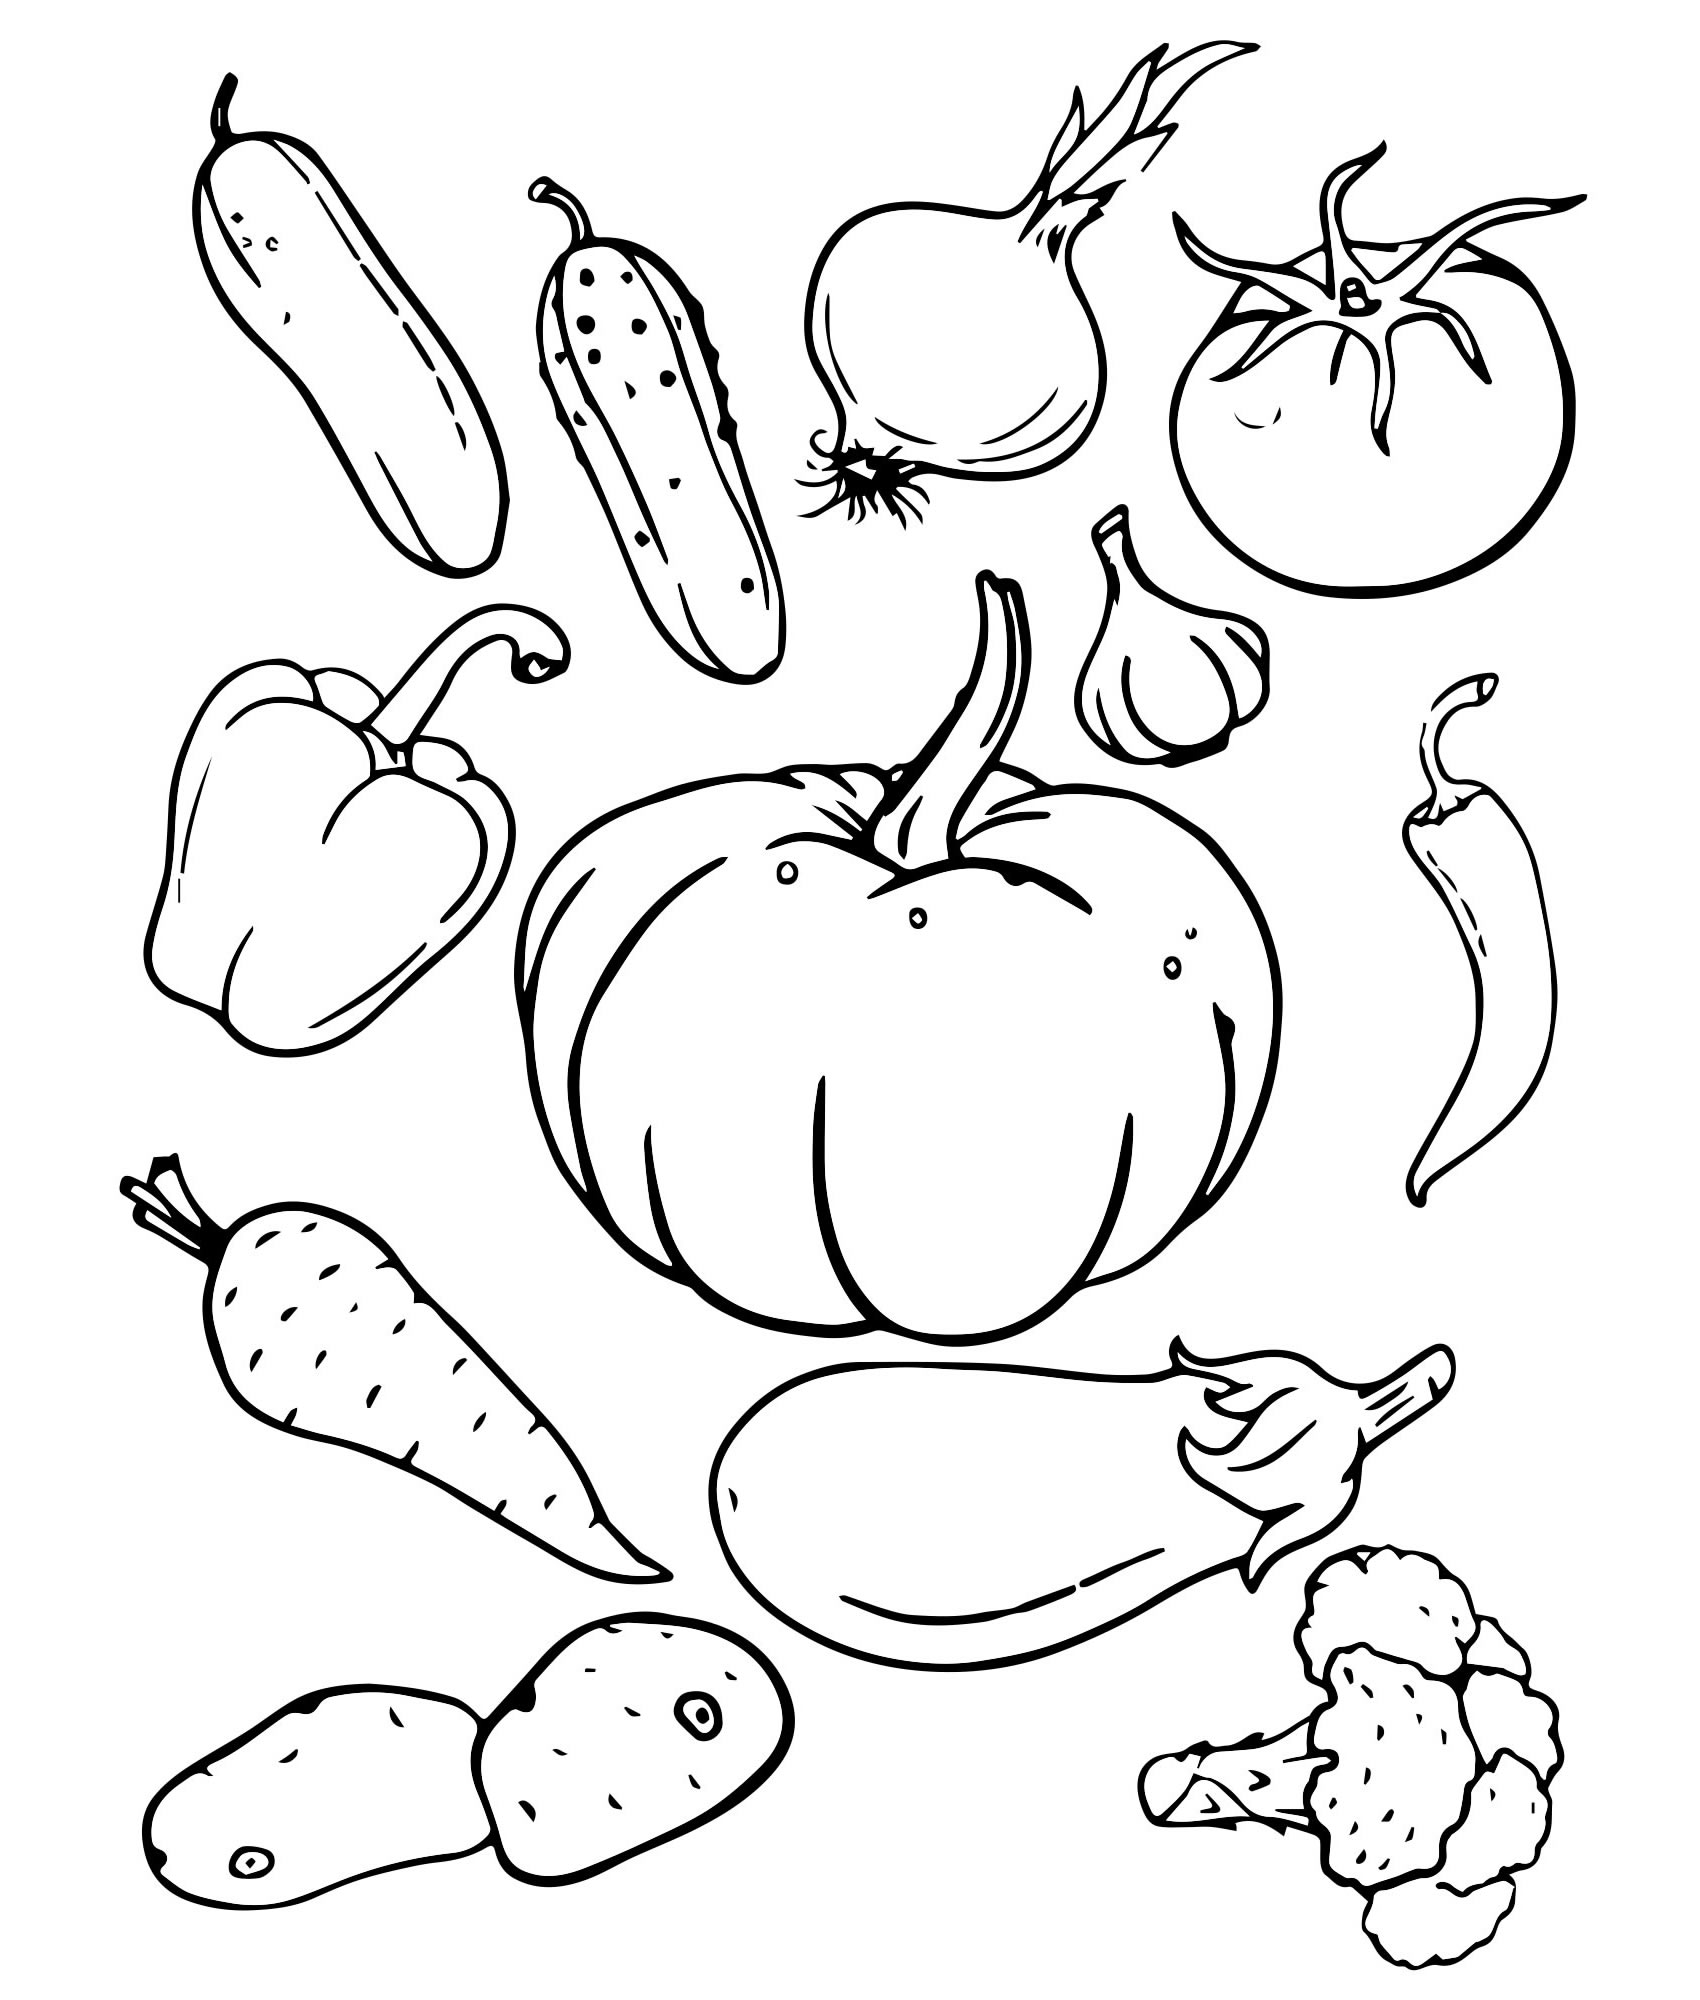 Раскраски Овощей распечатать или скачать бесплатно в формате PDF.